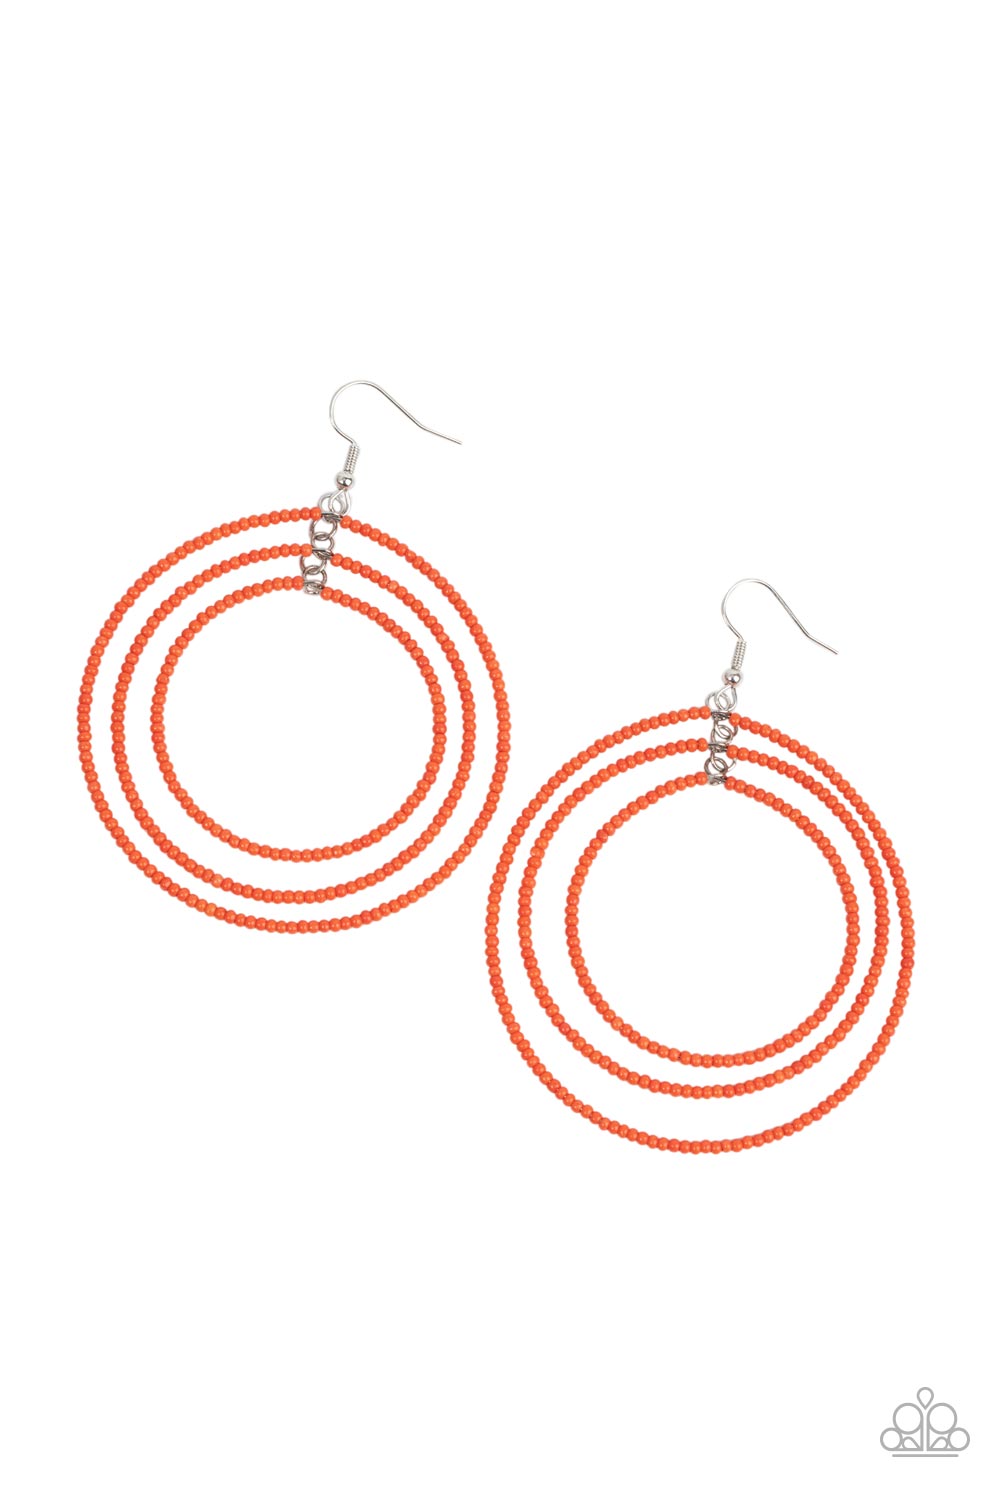 Colorfully Circulating - Orange seed bead earrings